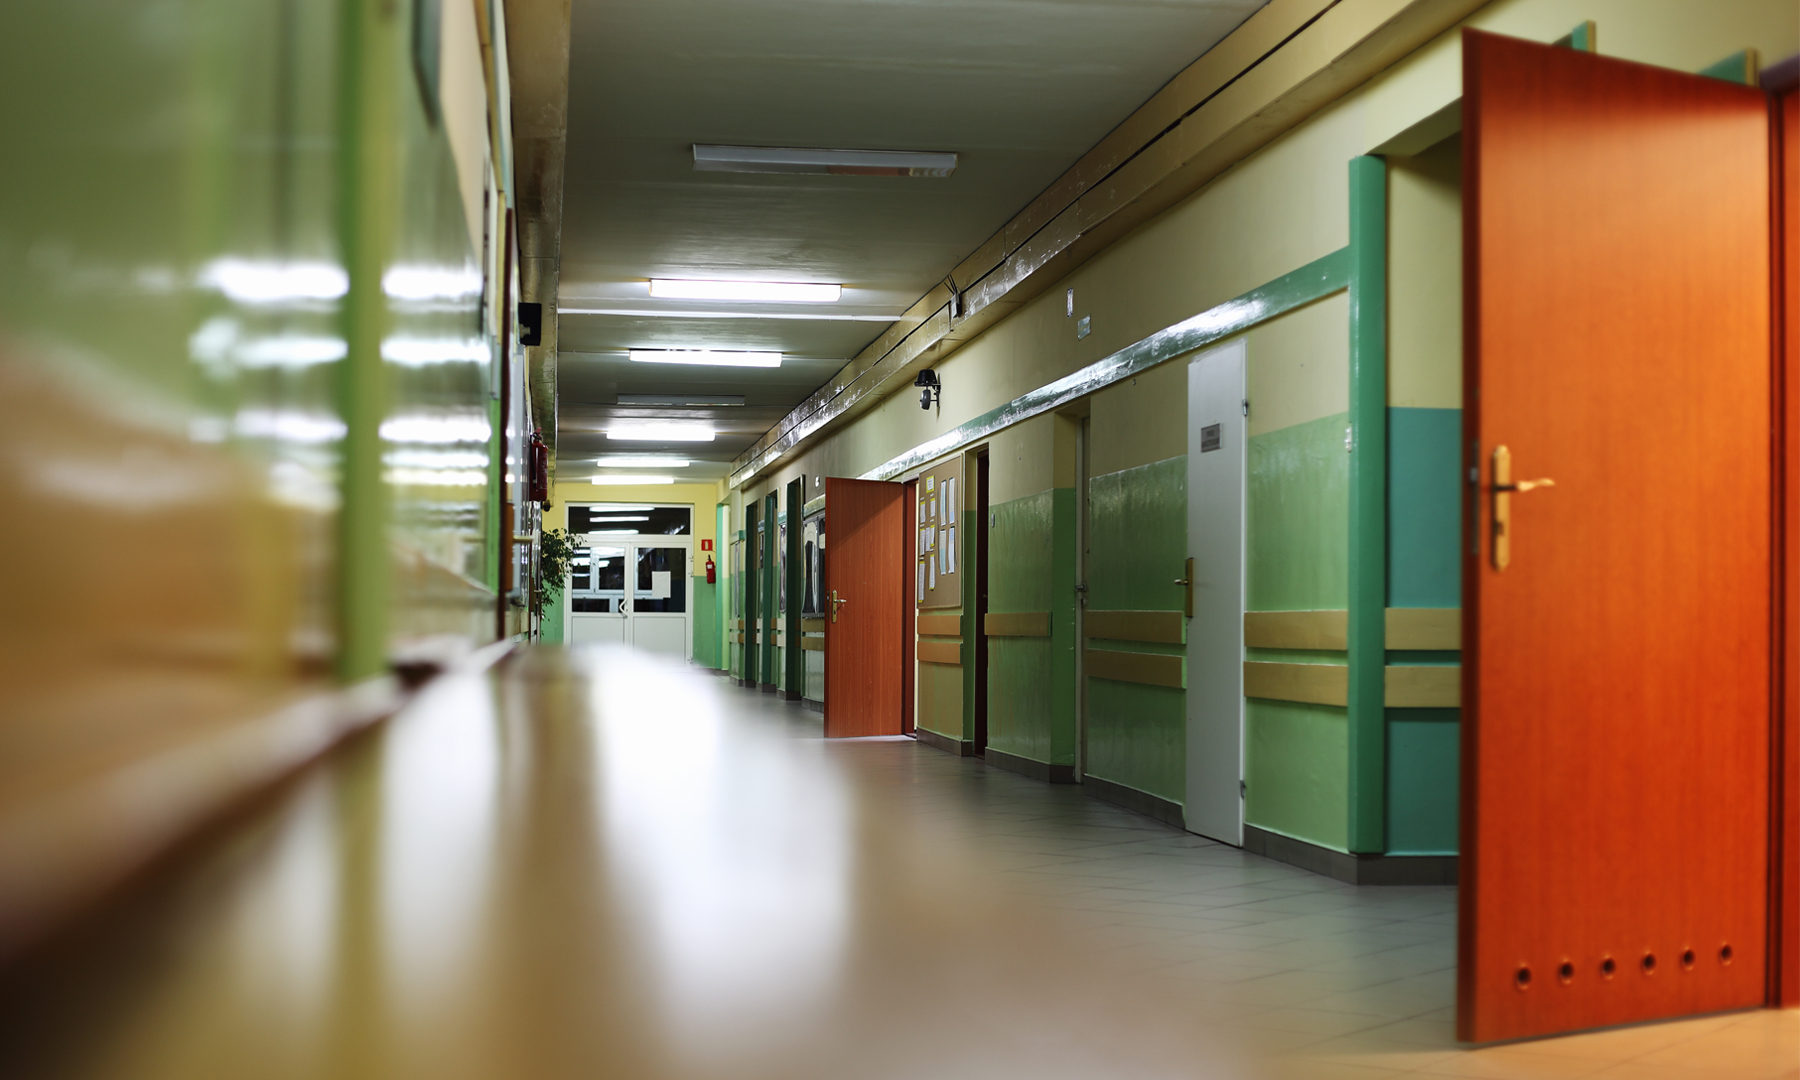 Hallway, School, Classrooms, Doors